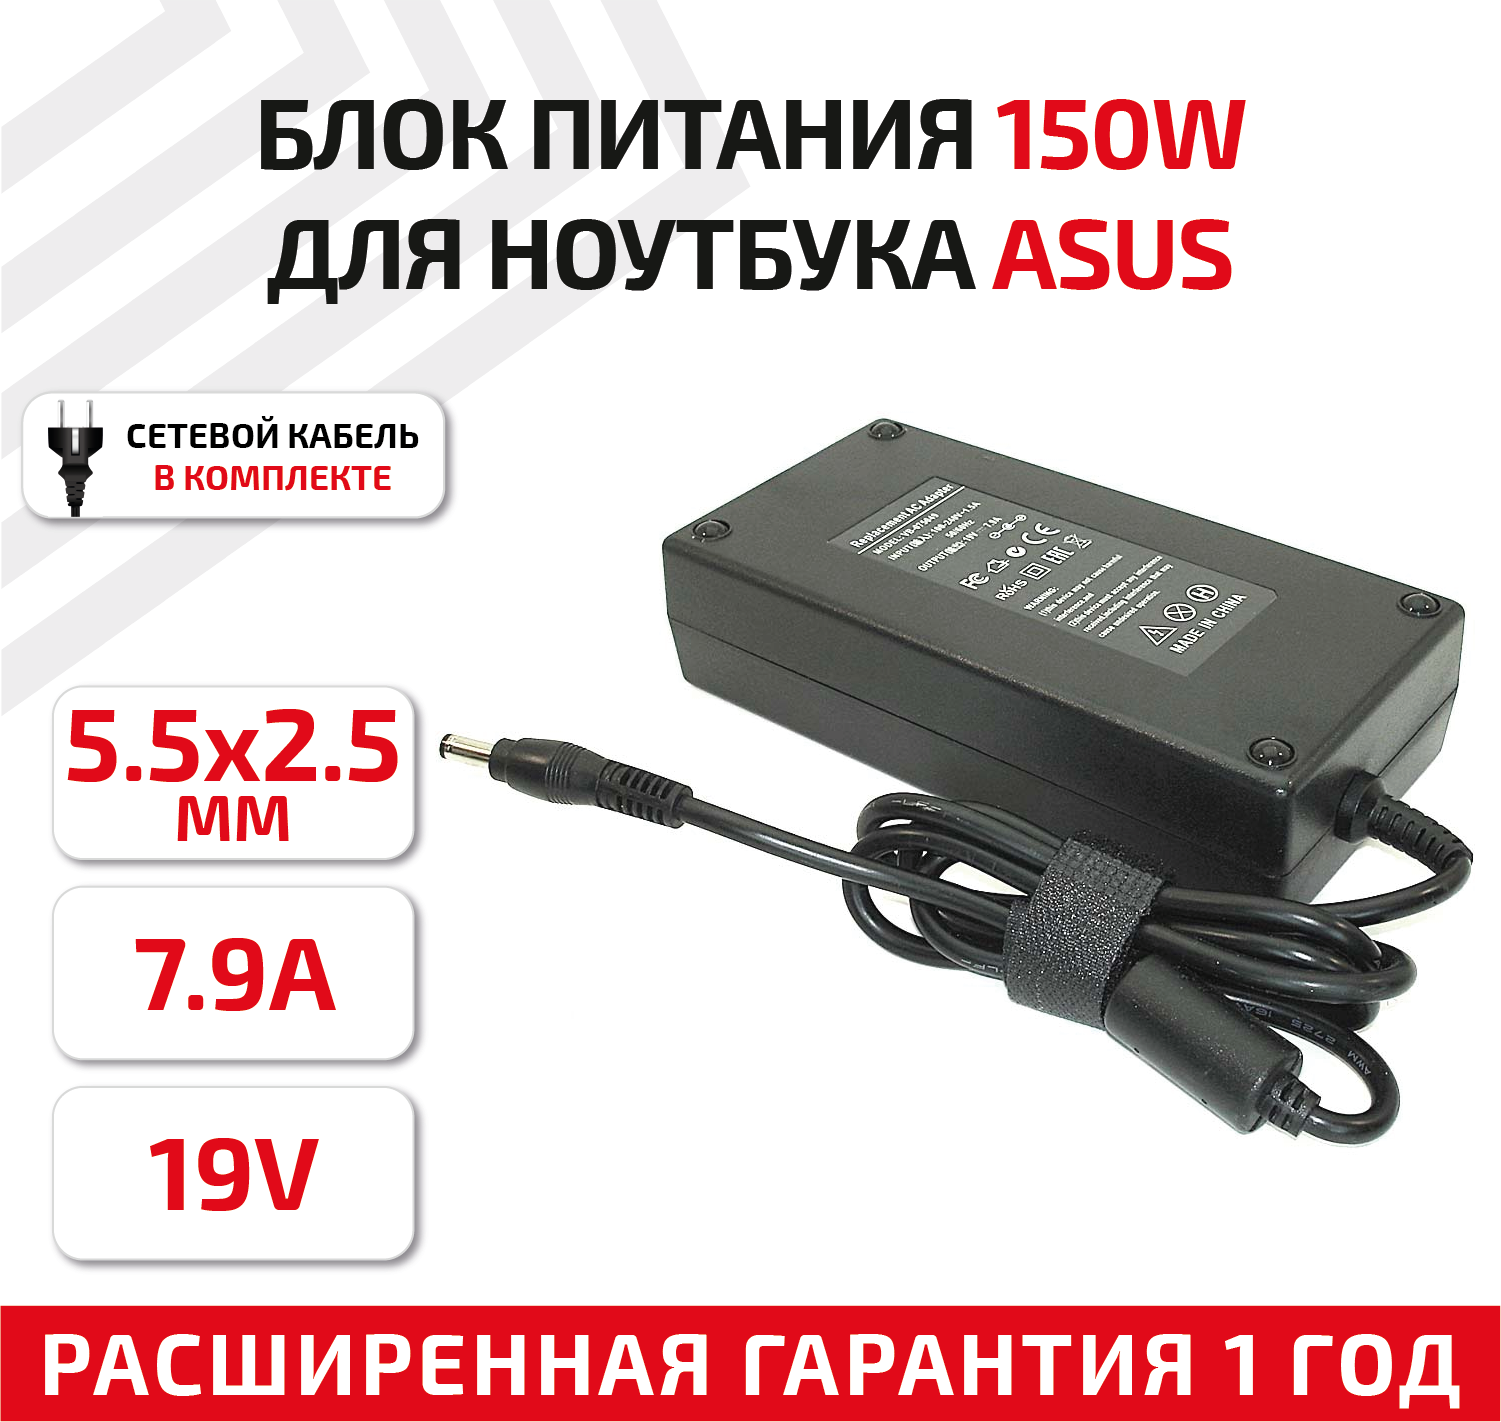 Зарядное устройство (блок питания/зарядка) для ноутбука Asus G53, G73, G74, 19В, 7.9А, 150Вт, 5.5x2.5мм